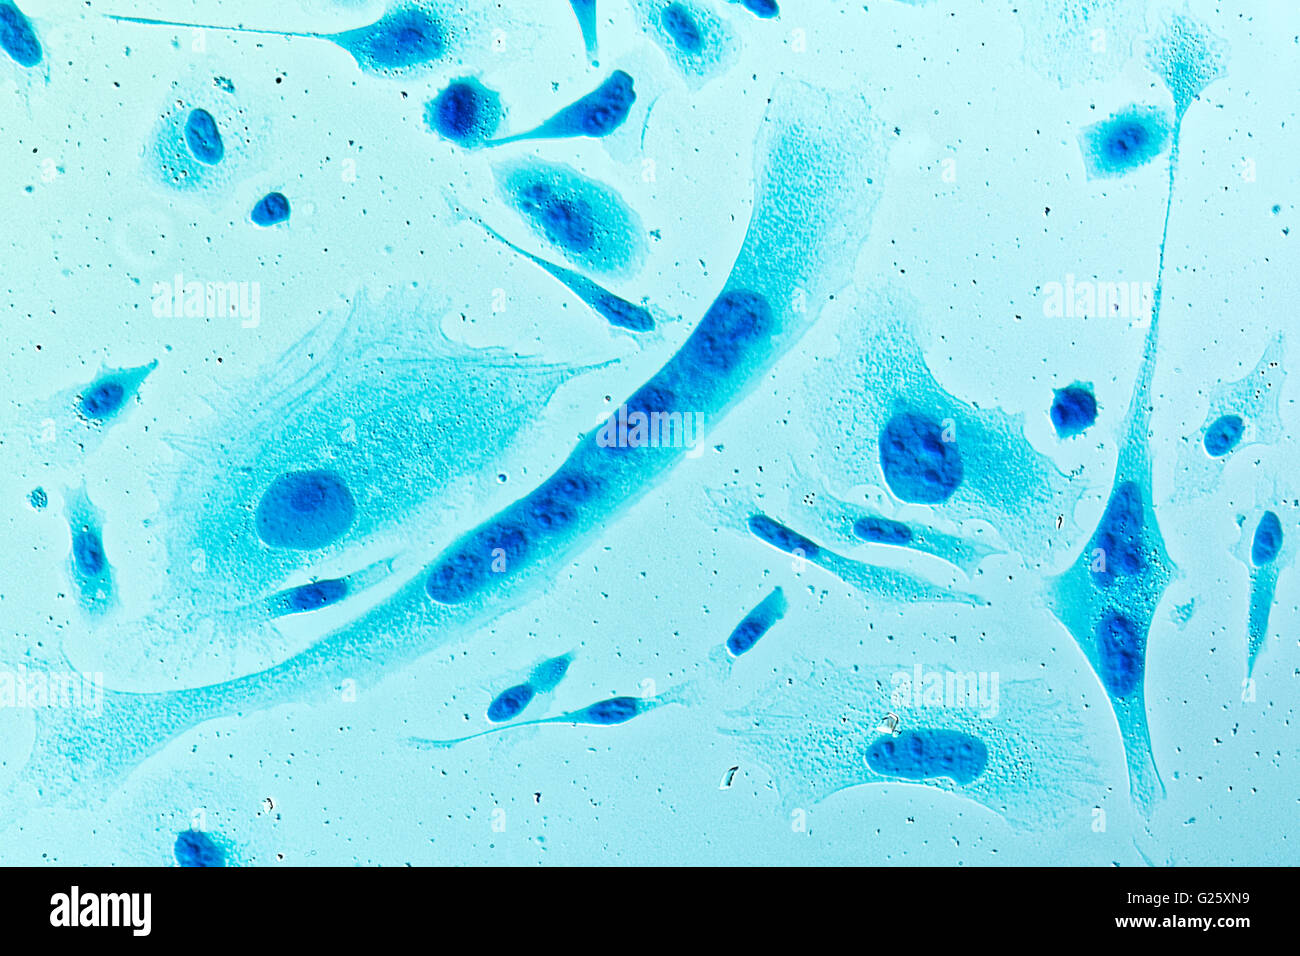 PC-3 menschlichen Prostatakrebszellen, befleckt mit Coomassie Blau, unter differen Interferenz-Kontrast-Mikroskop. Stockfoto